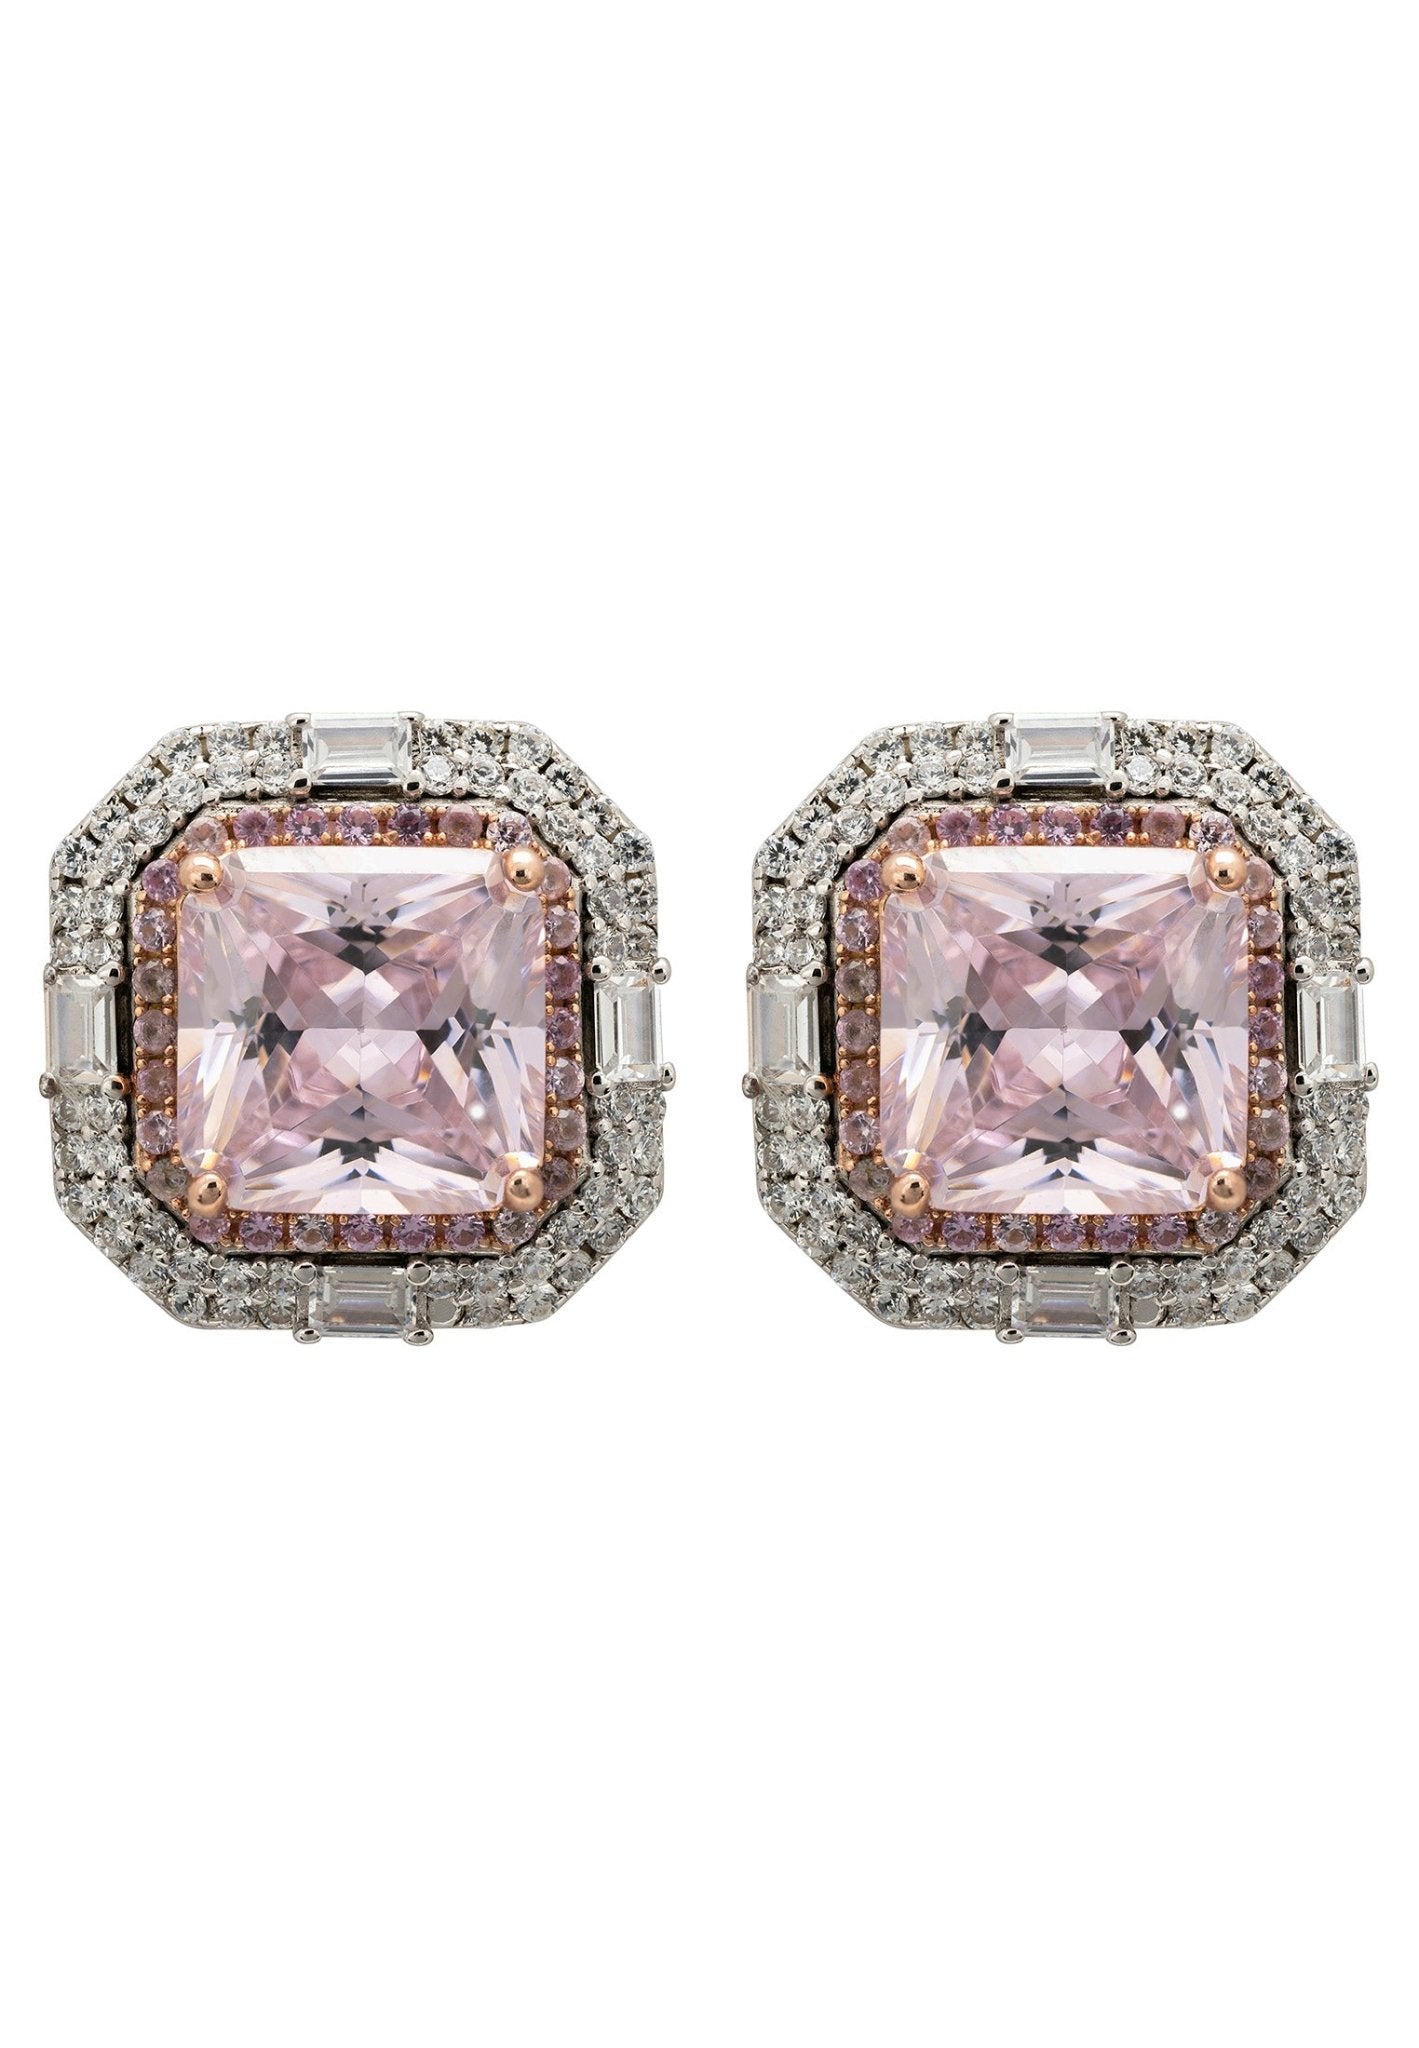 Madeleine Large Stud Earrings Silver Pink Morganite - LATELITA Earrings